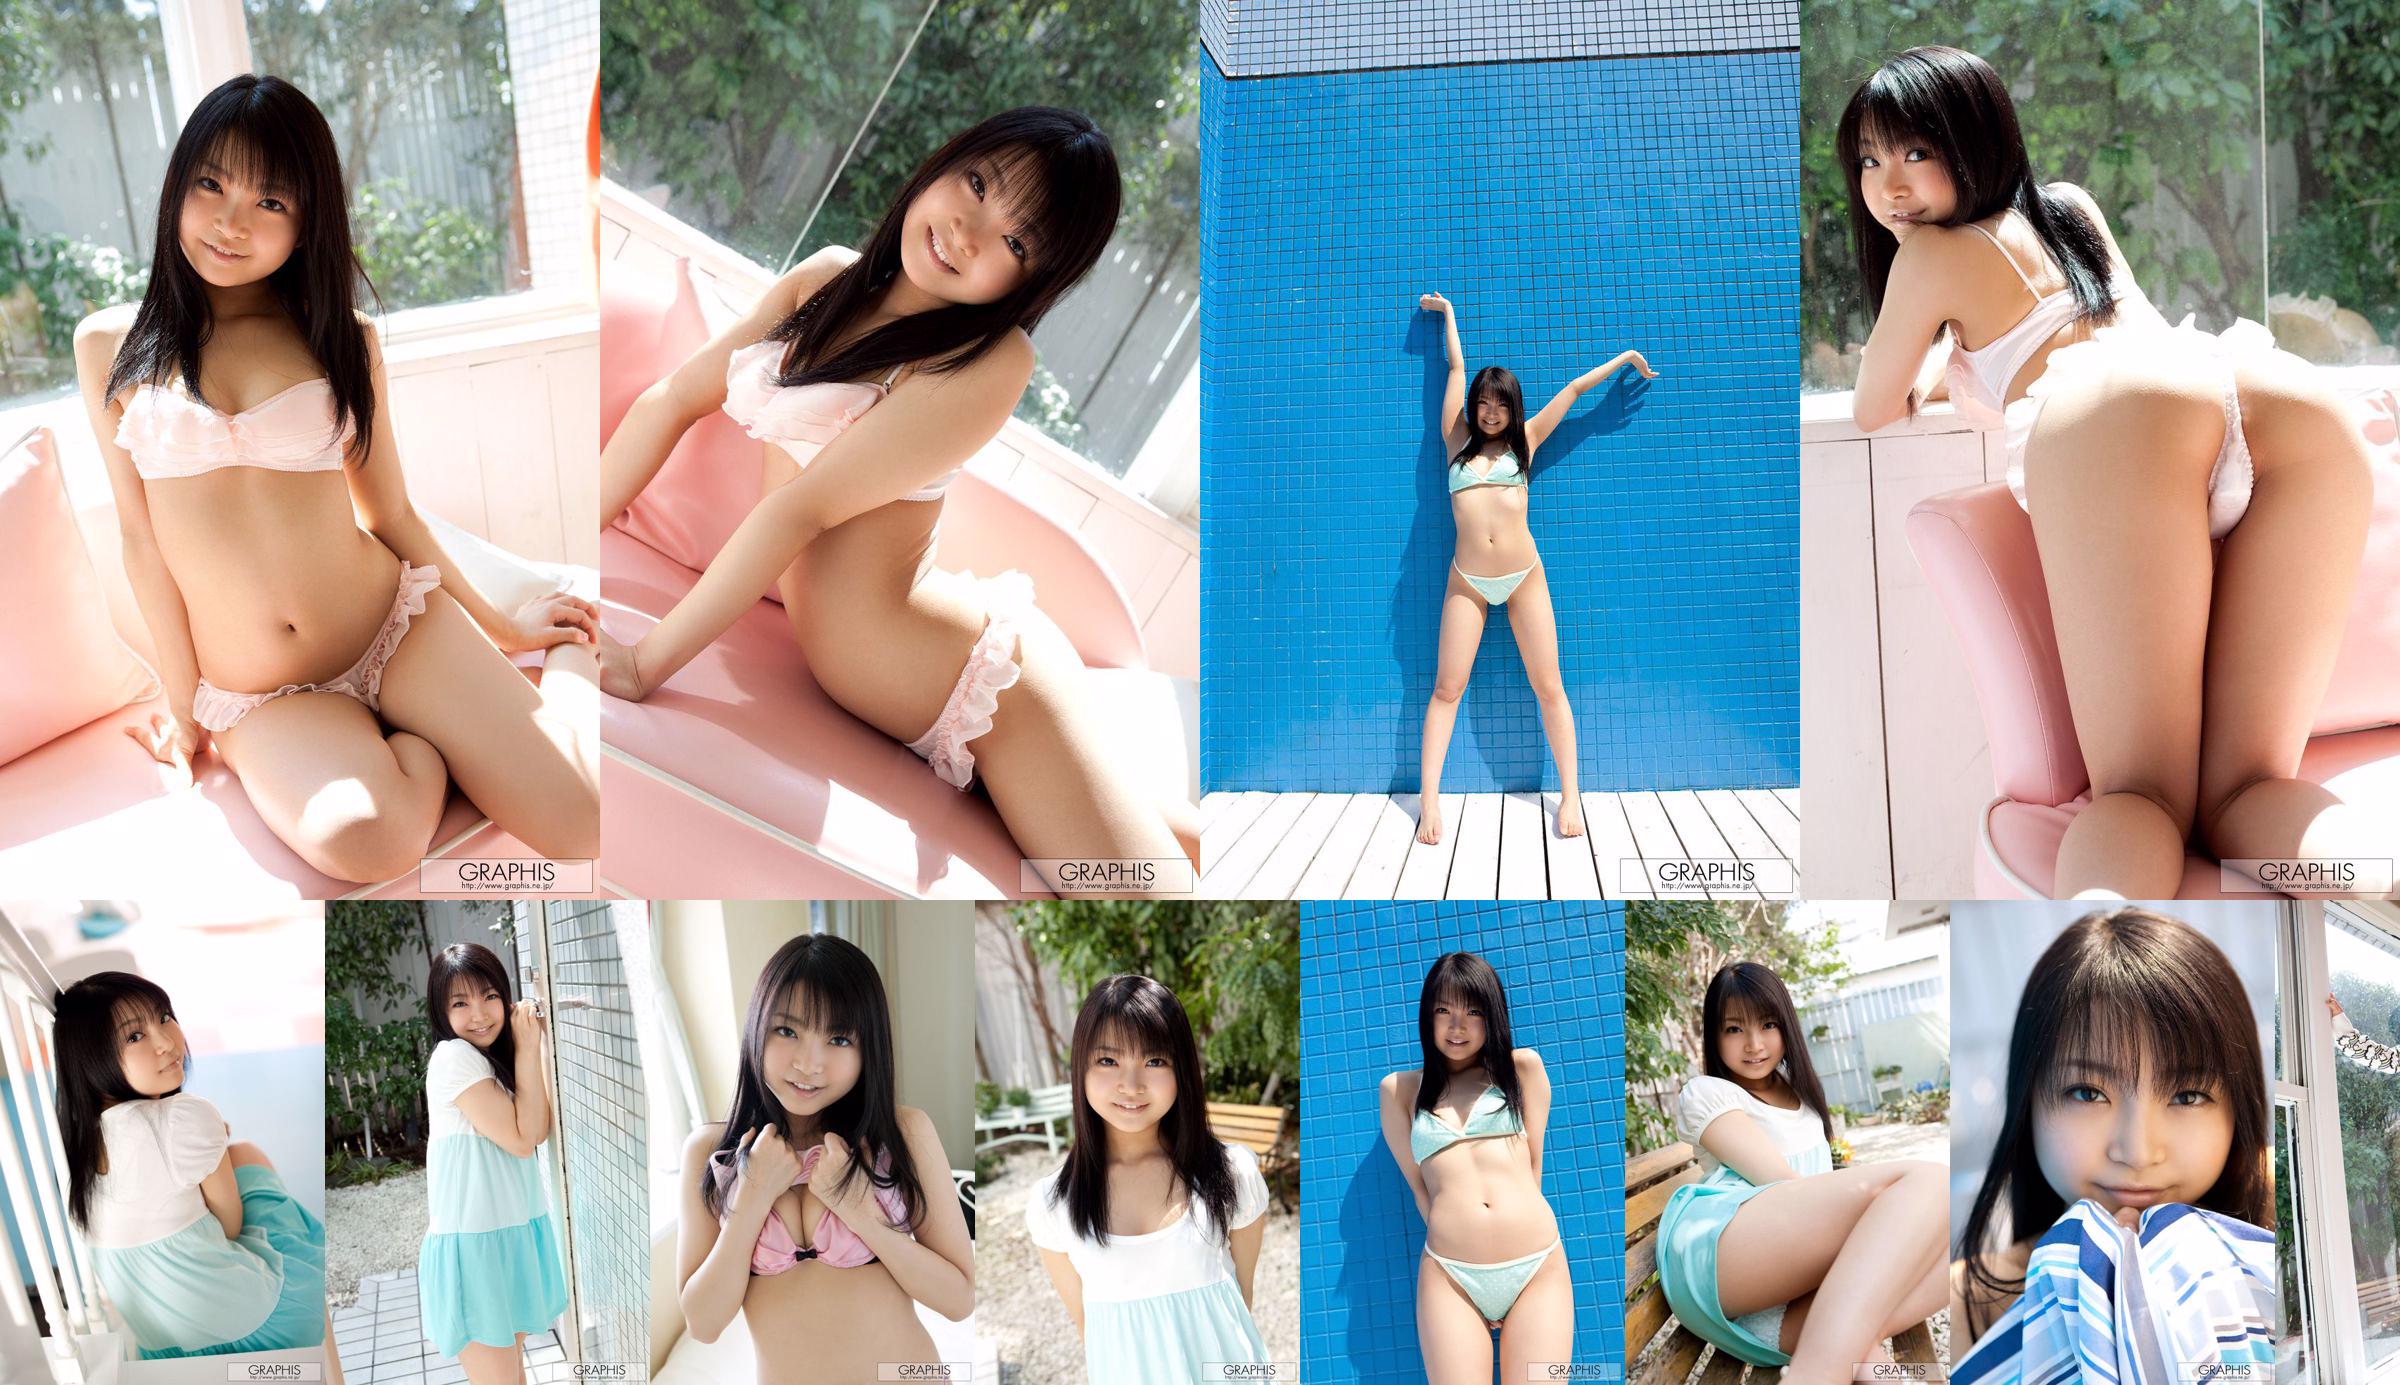 Chihiro Aoi / Chihiro Aoi [Graphis] Primera fotograbado Primera hija No.7cc7e8 Página 10